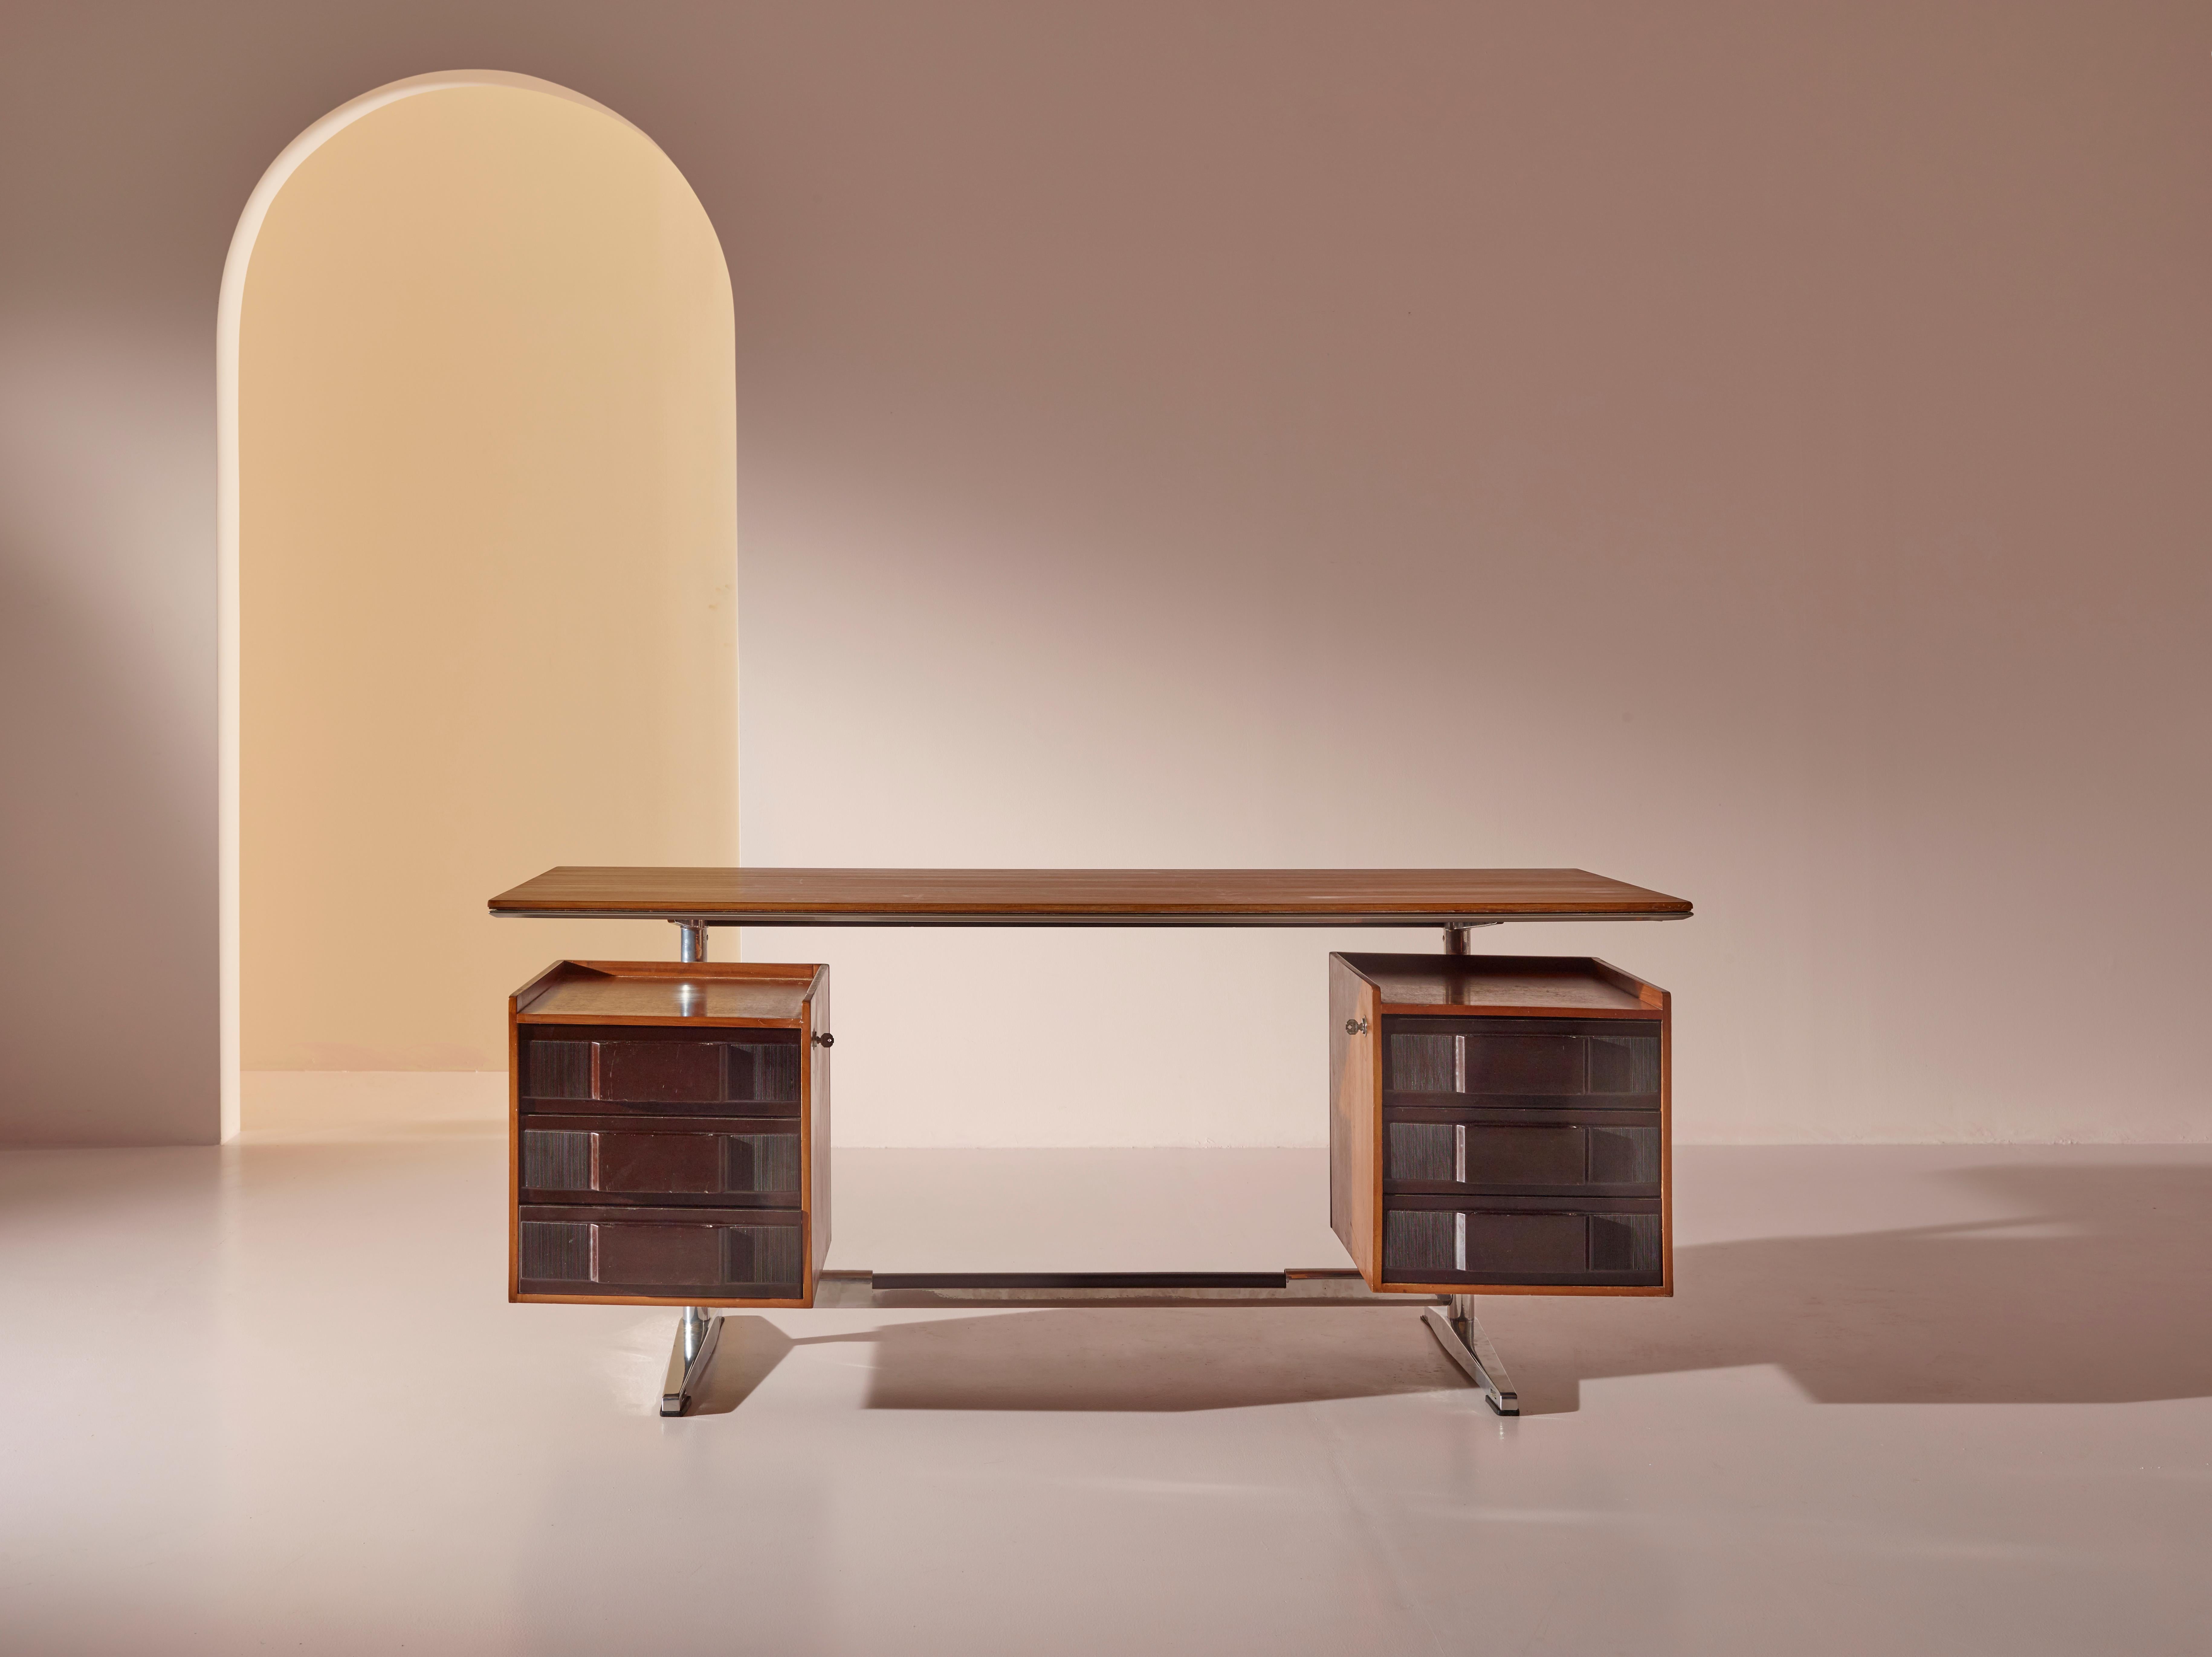 Dieser Schreibtisch wurde 1956 von dem berühmten Architekten Gio Ponti entworfen und speziell für die Büros des Pirelli-Hochhauses entworfen. Der Schreibtisch hat die Maße H. 75,5 x 170 x 75,5 cm und bietet eine geräumige und funktionelle